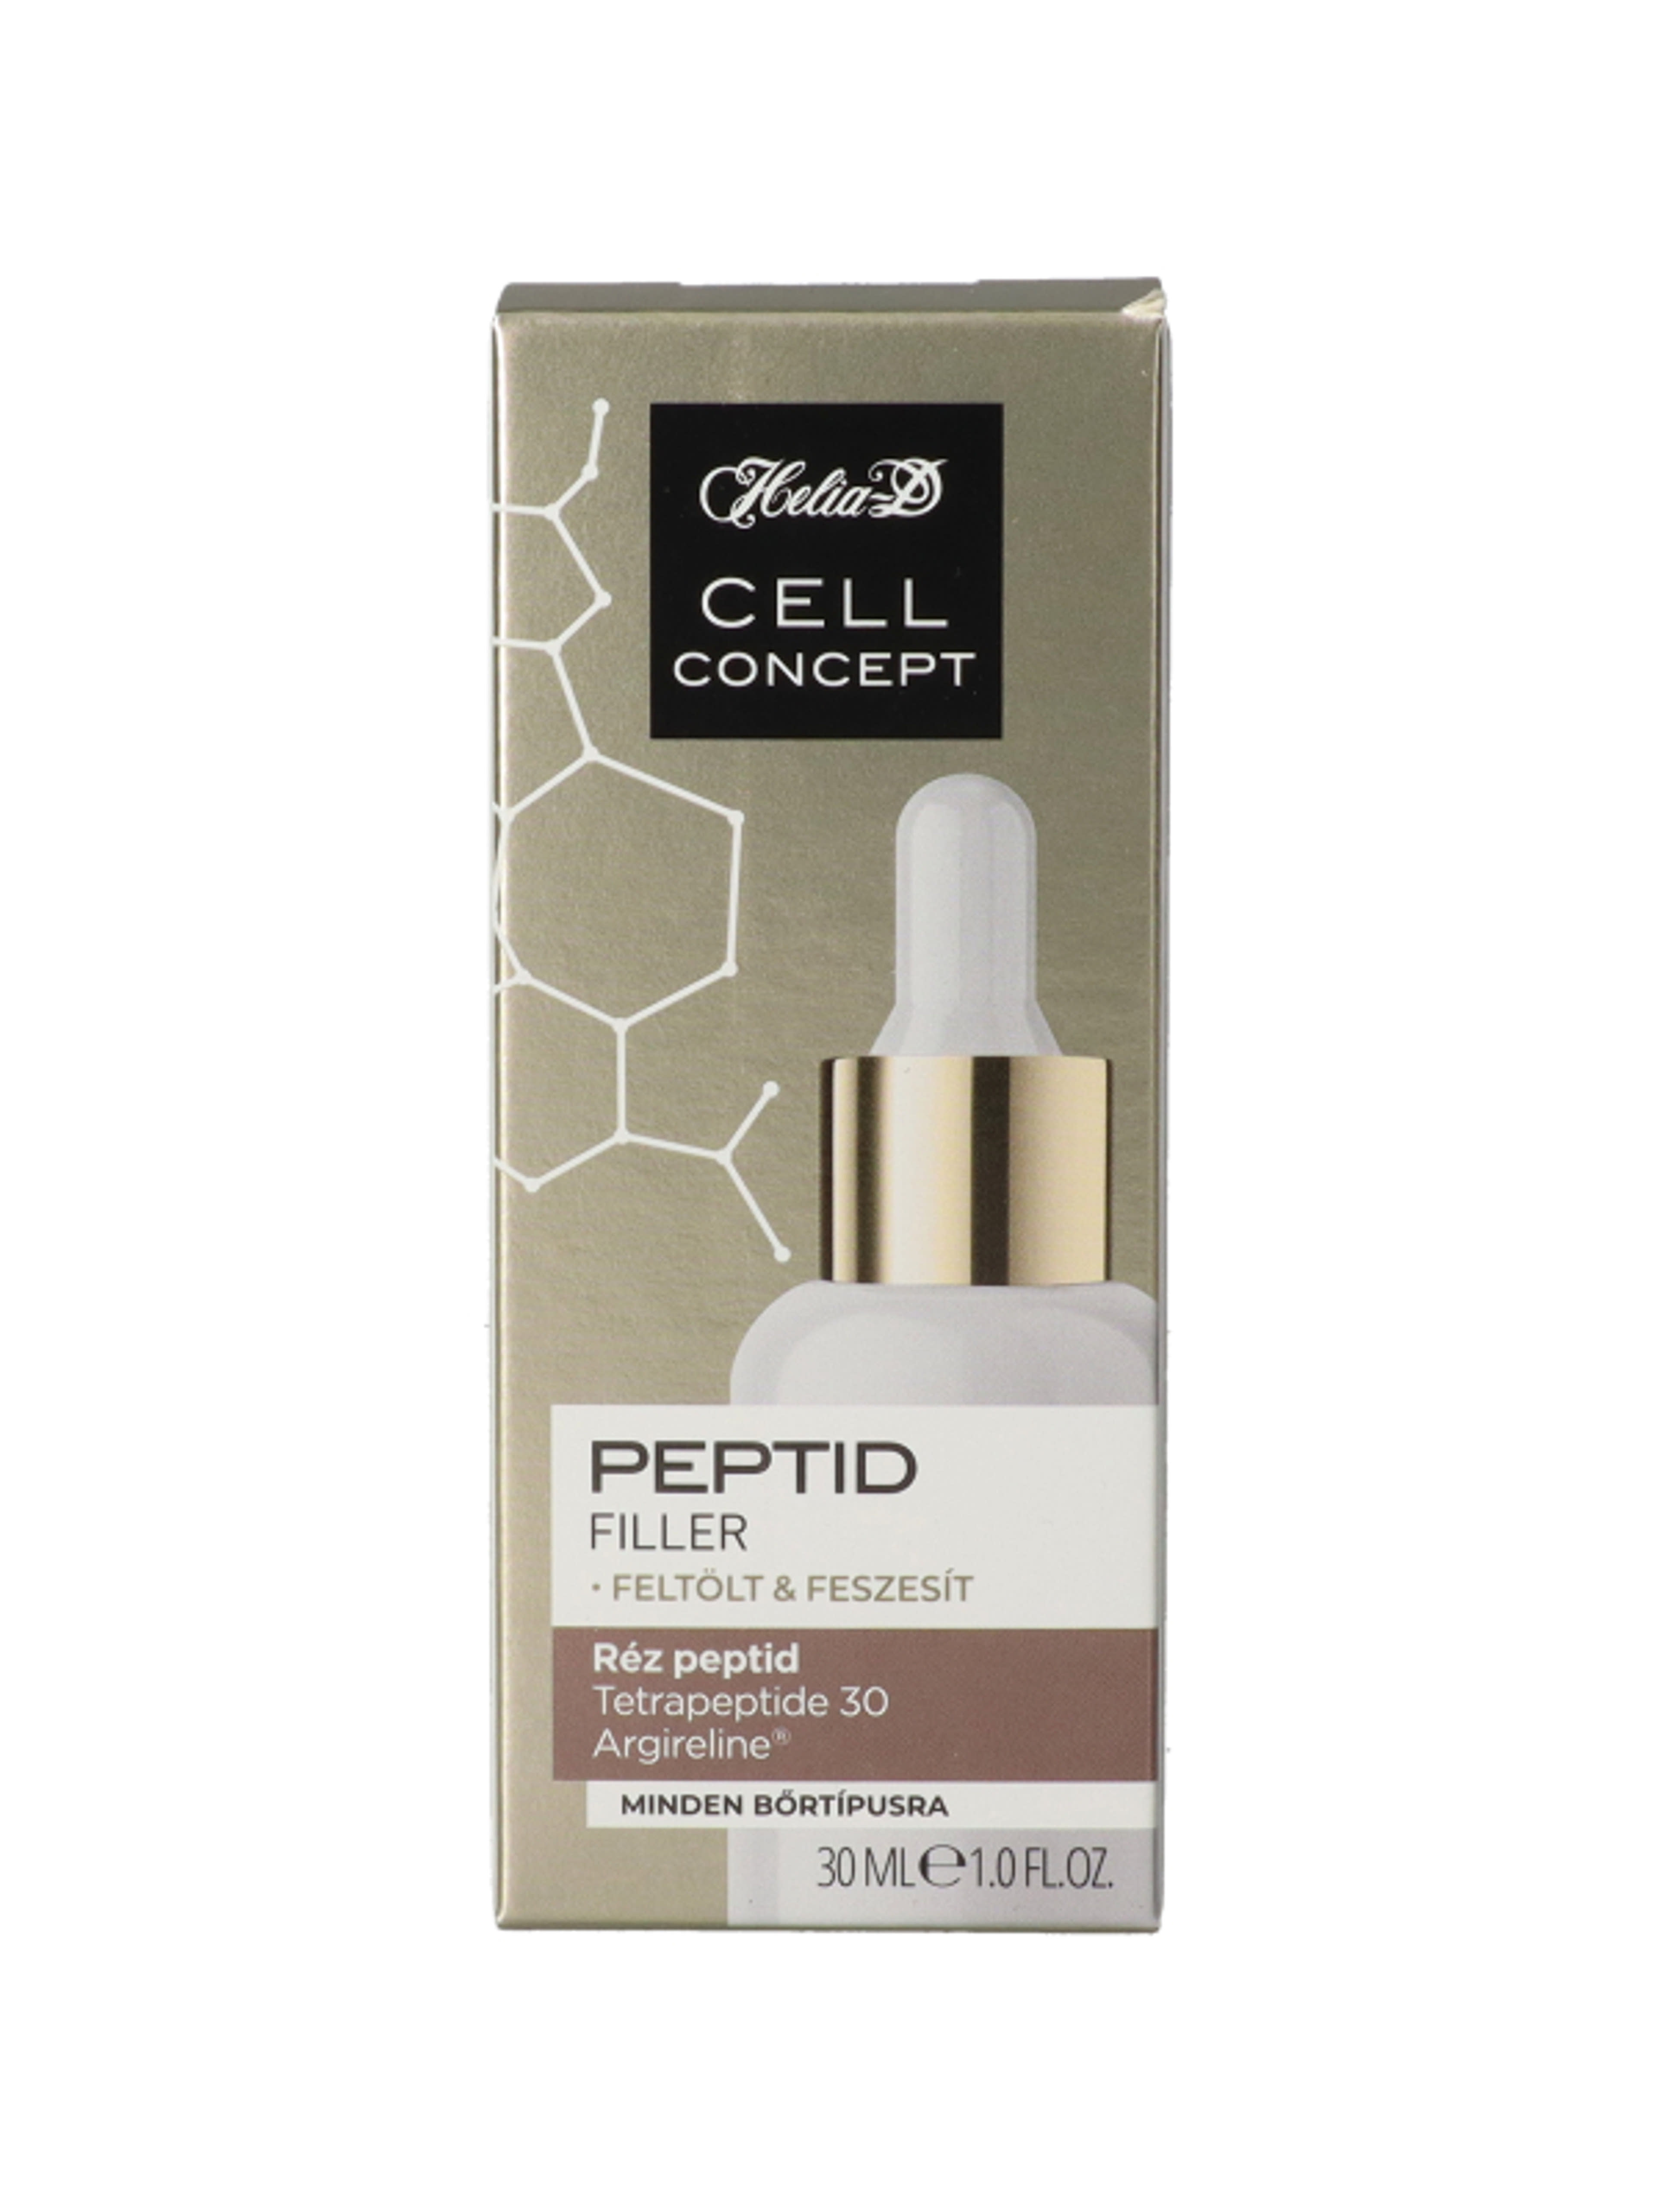 Helia-D Cell Concept Peptid szérum - 30 ml